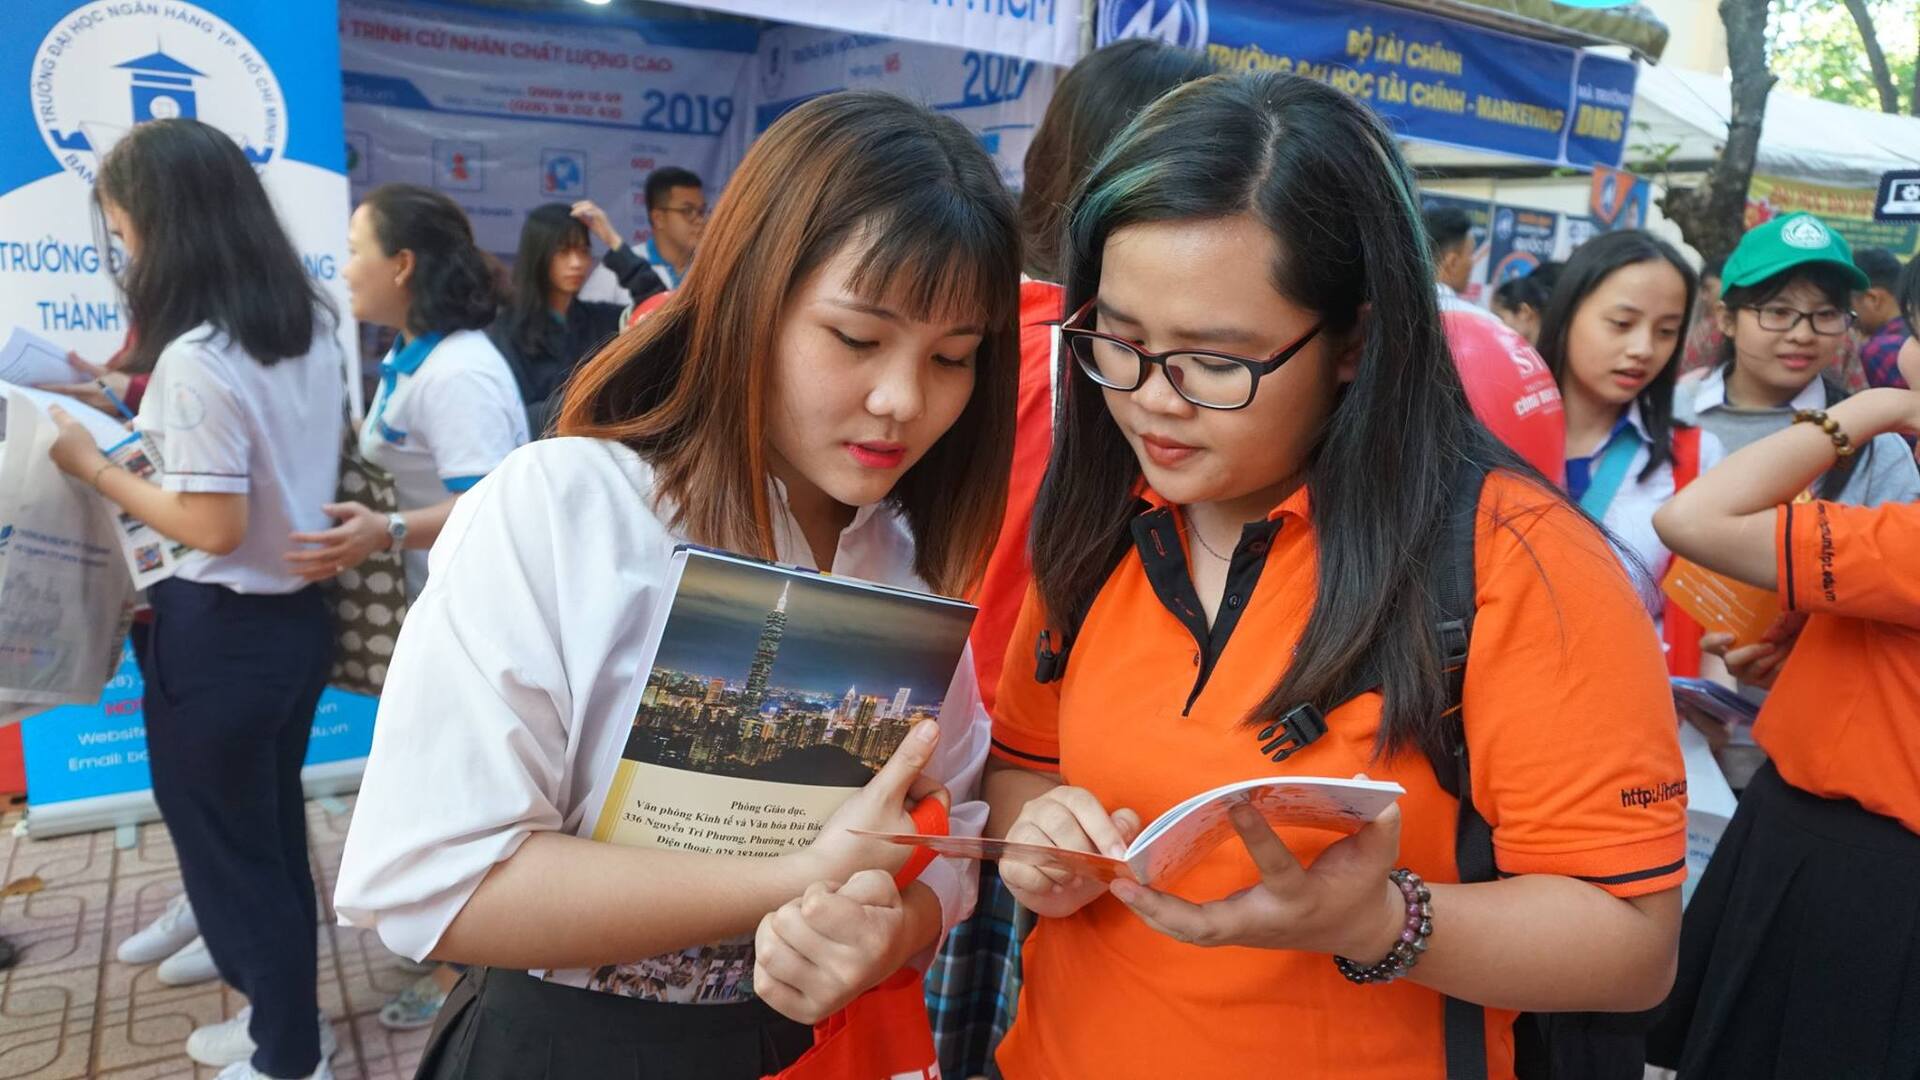 Sắc cam ngập tràn ngày hội tư vấn kỳ thi THPT Quốc gia 2019 tại Đồng Nai